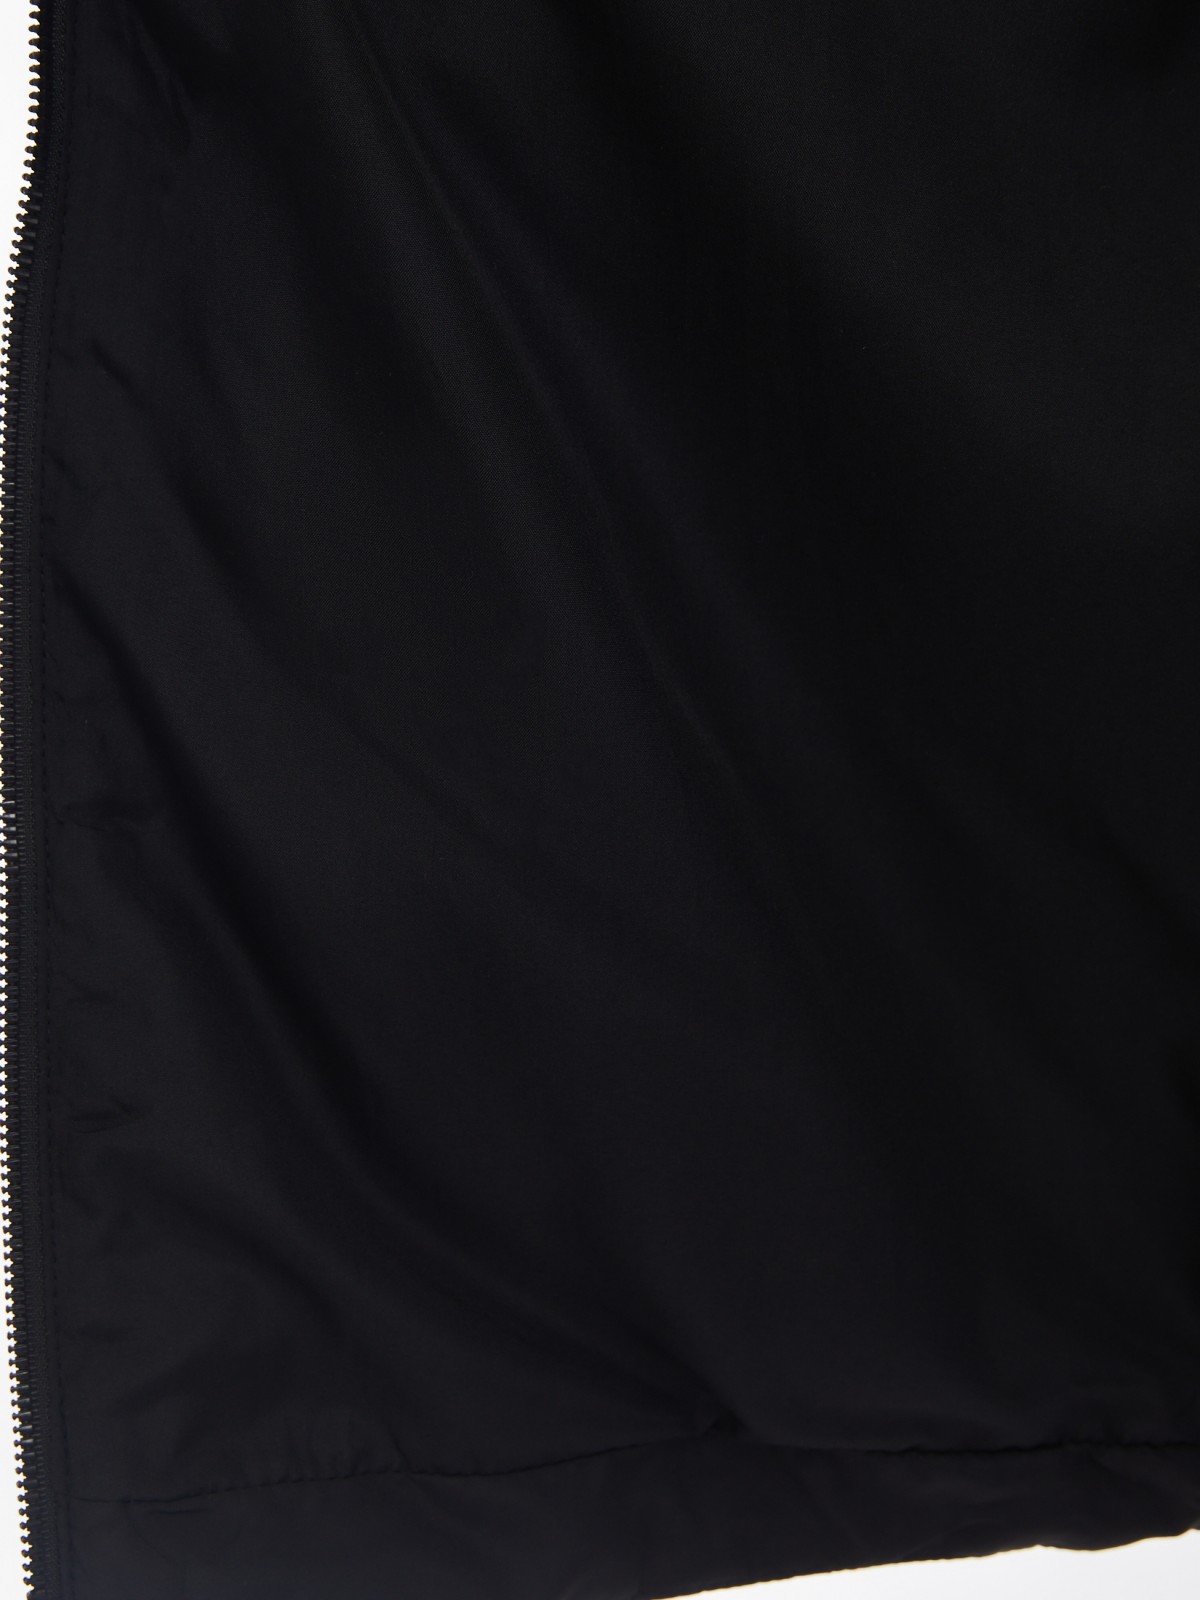 Утеплённое стёганое пальто-бомбер на синтепоне zolla 024125250044, цвет черный, размер XS - фото 5